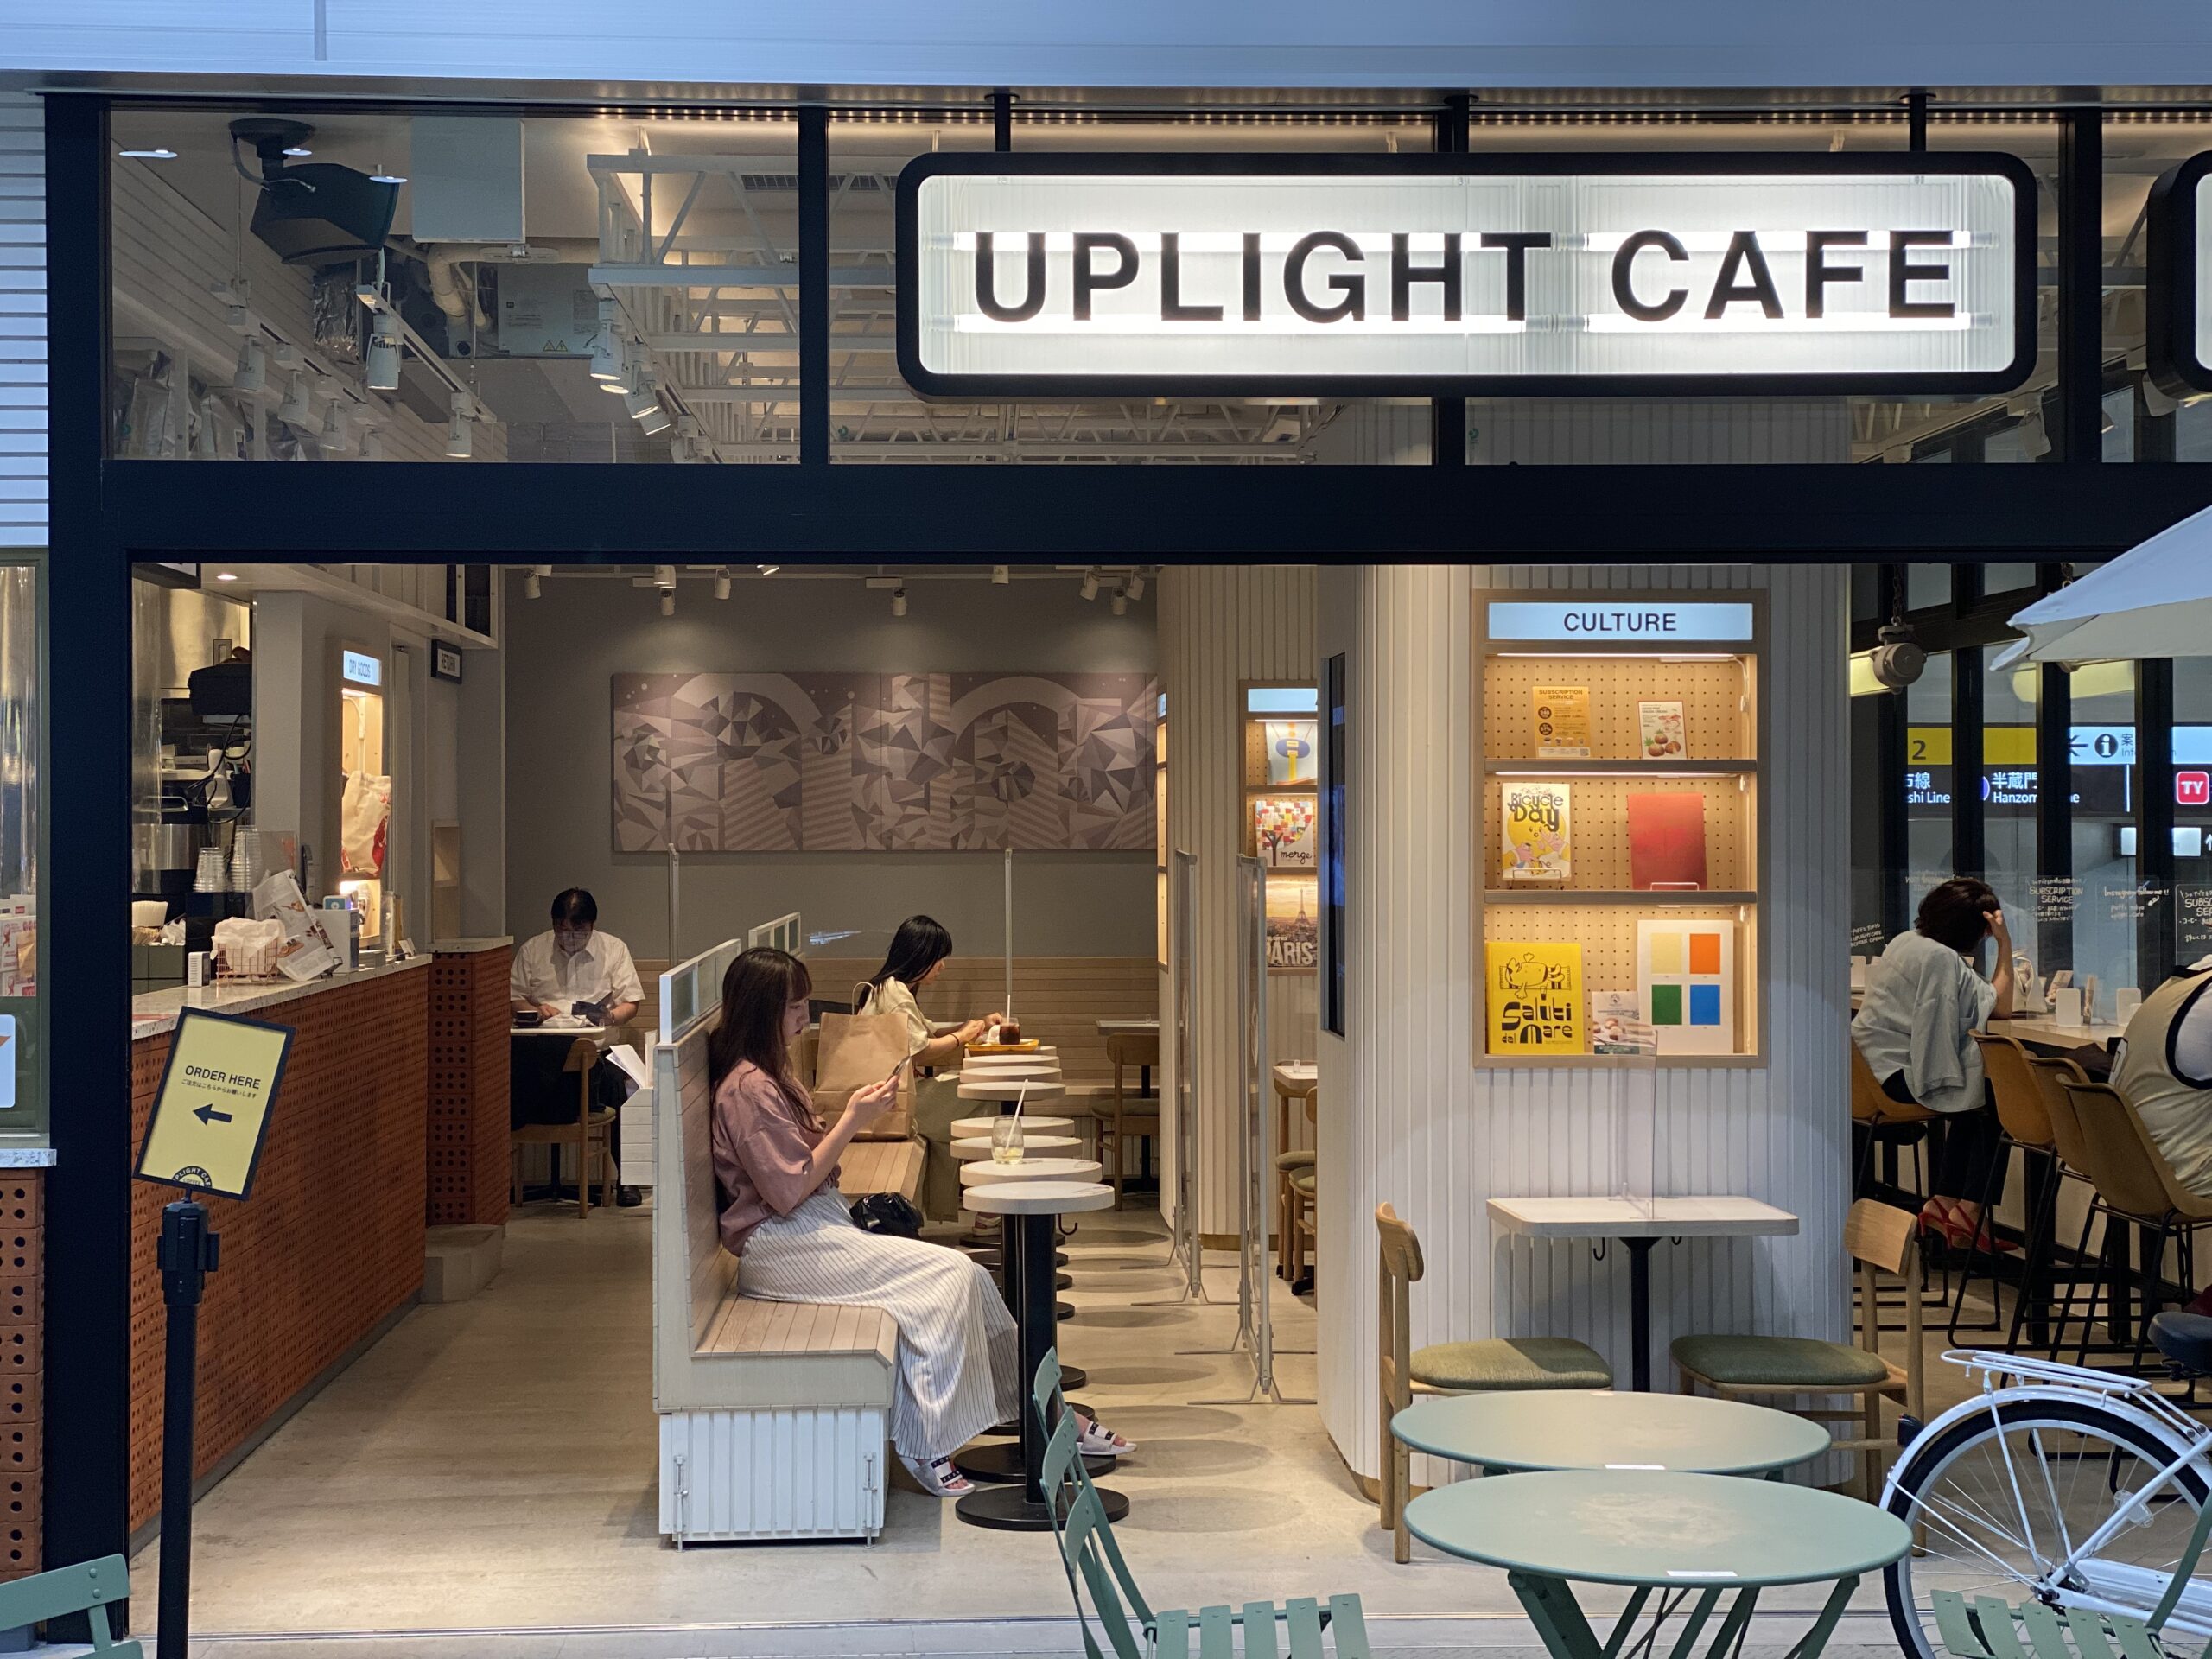 ブルートラベルエンジニア パソコン作業（プログラミング学習環境）におすすめのカフェ|渋谷 UPLIGHT CAFE